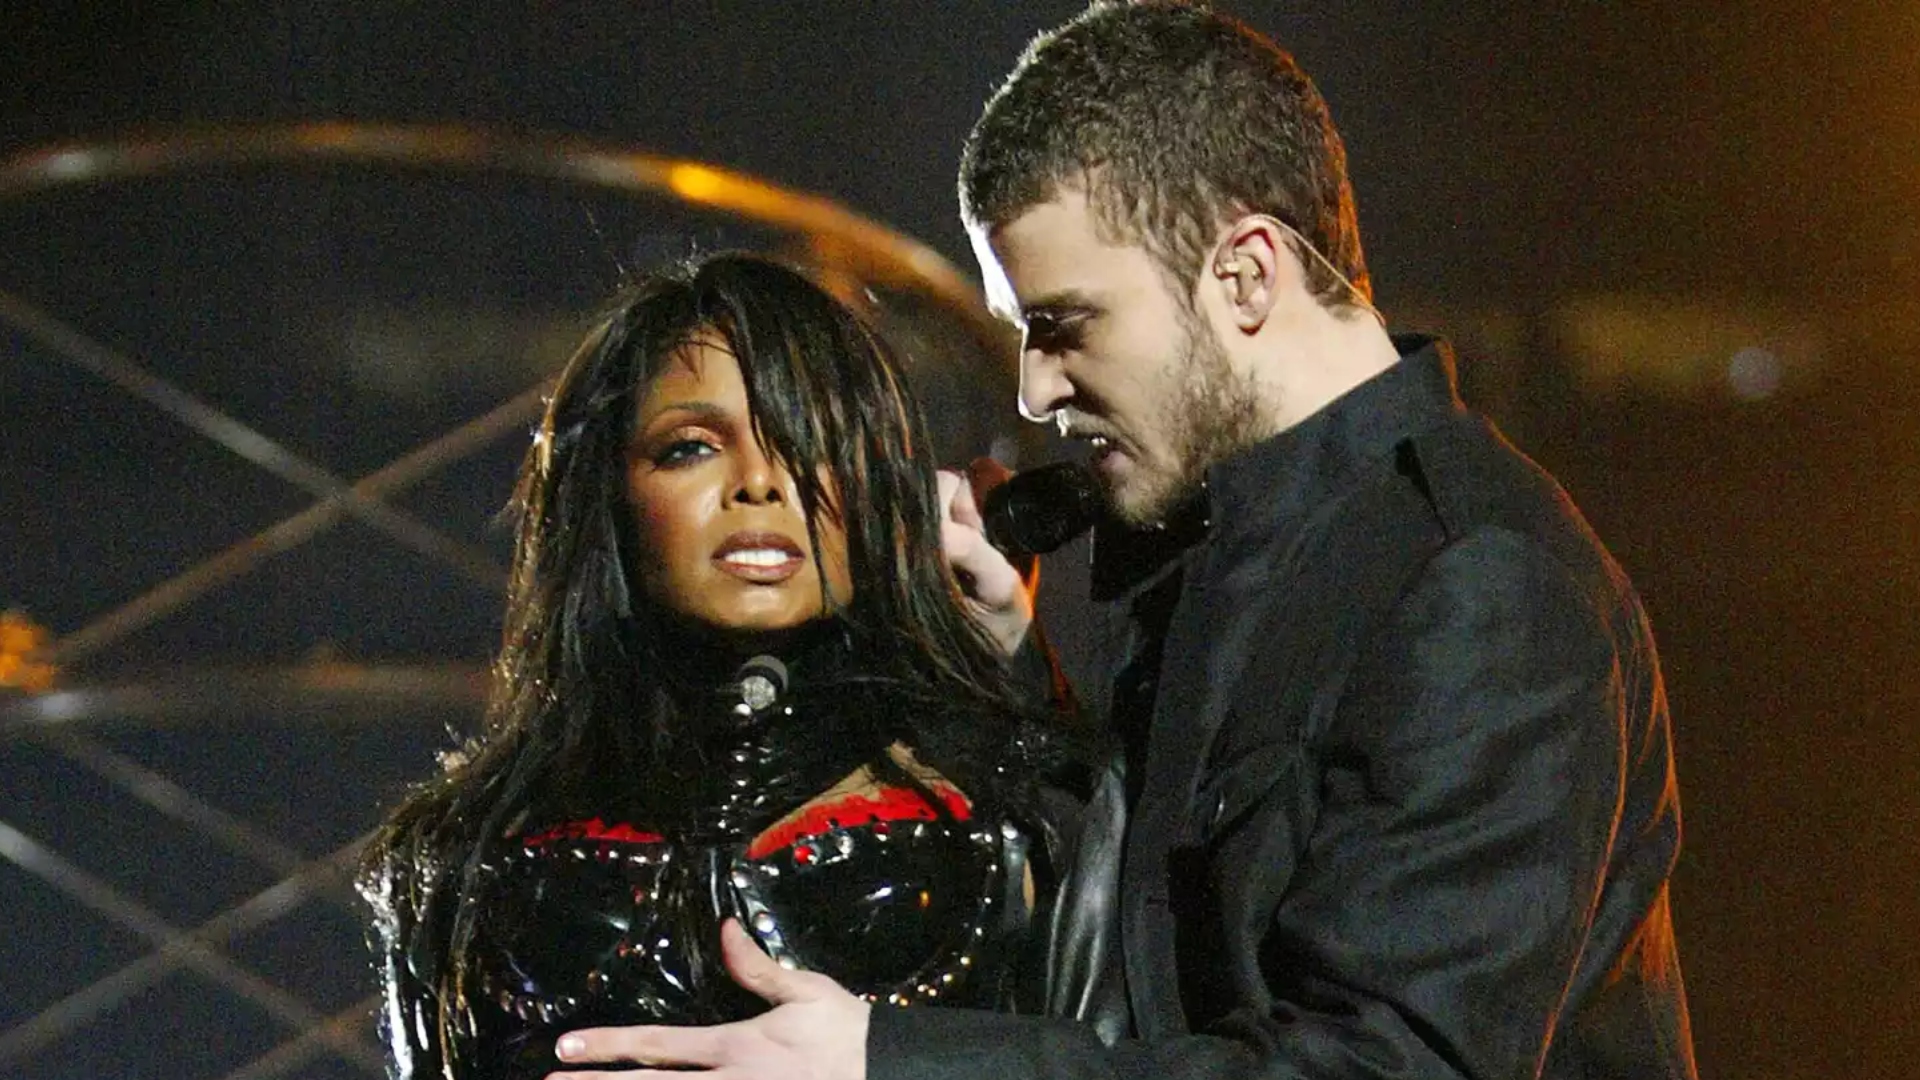 La polémica marcó el Halftime Show en 2004 con el famoso ‘Nipplegate’ de Janet Jackson. Su presentación pasó a la historia por un 'mal funcionamiento de vestuario'. Justin Timberlake arrancó accidentalmente parte del corsé de la cantante y dejó al descubierto uno de sus senos.